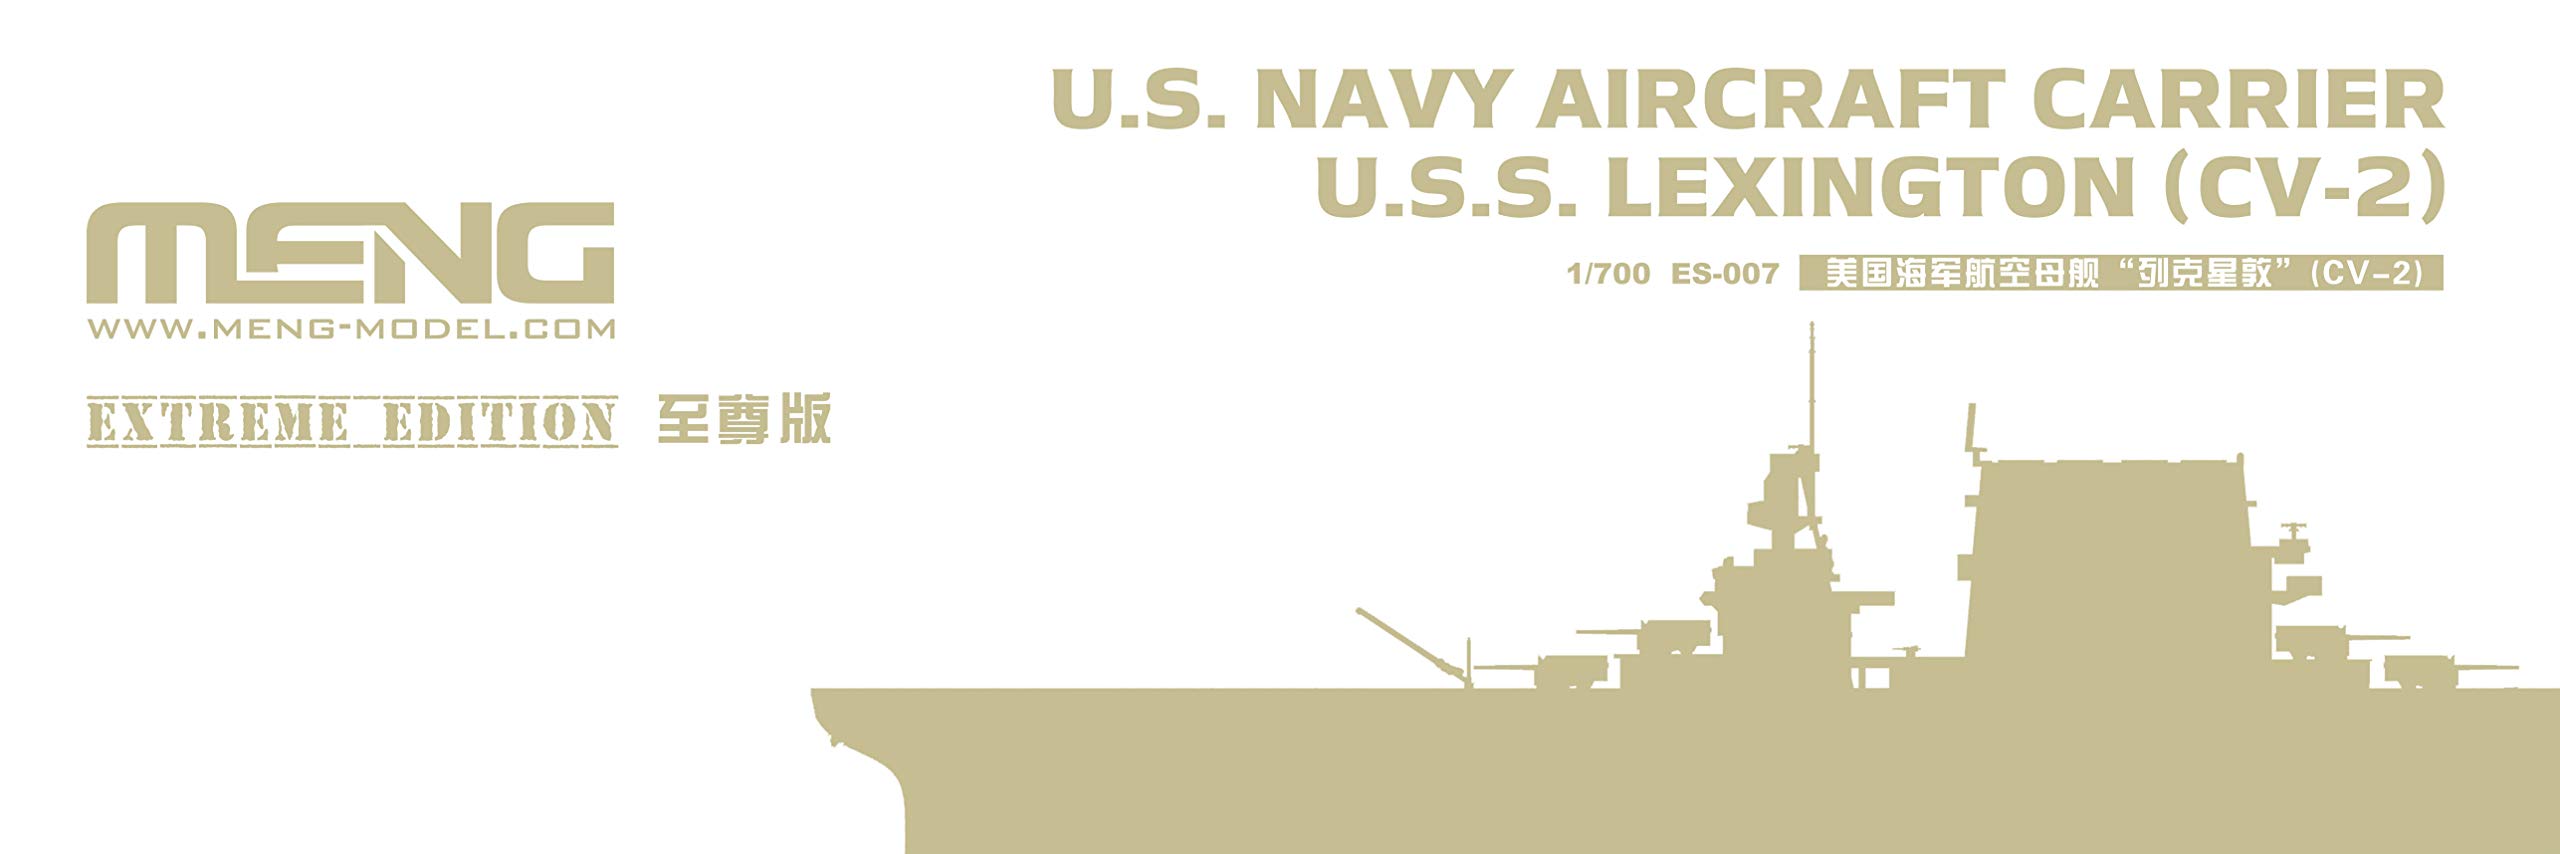 U.S. Navy Aircraft Carrier U.S.S. Lexington (CV-2)